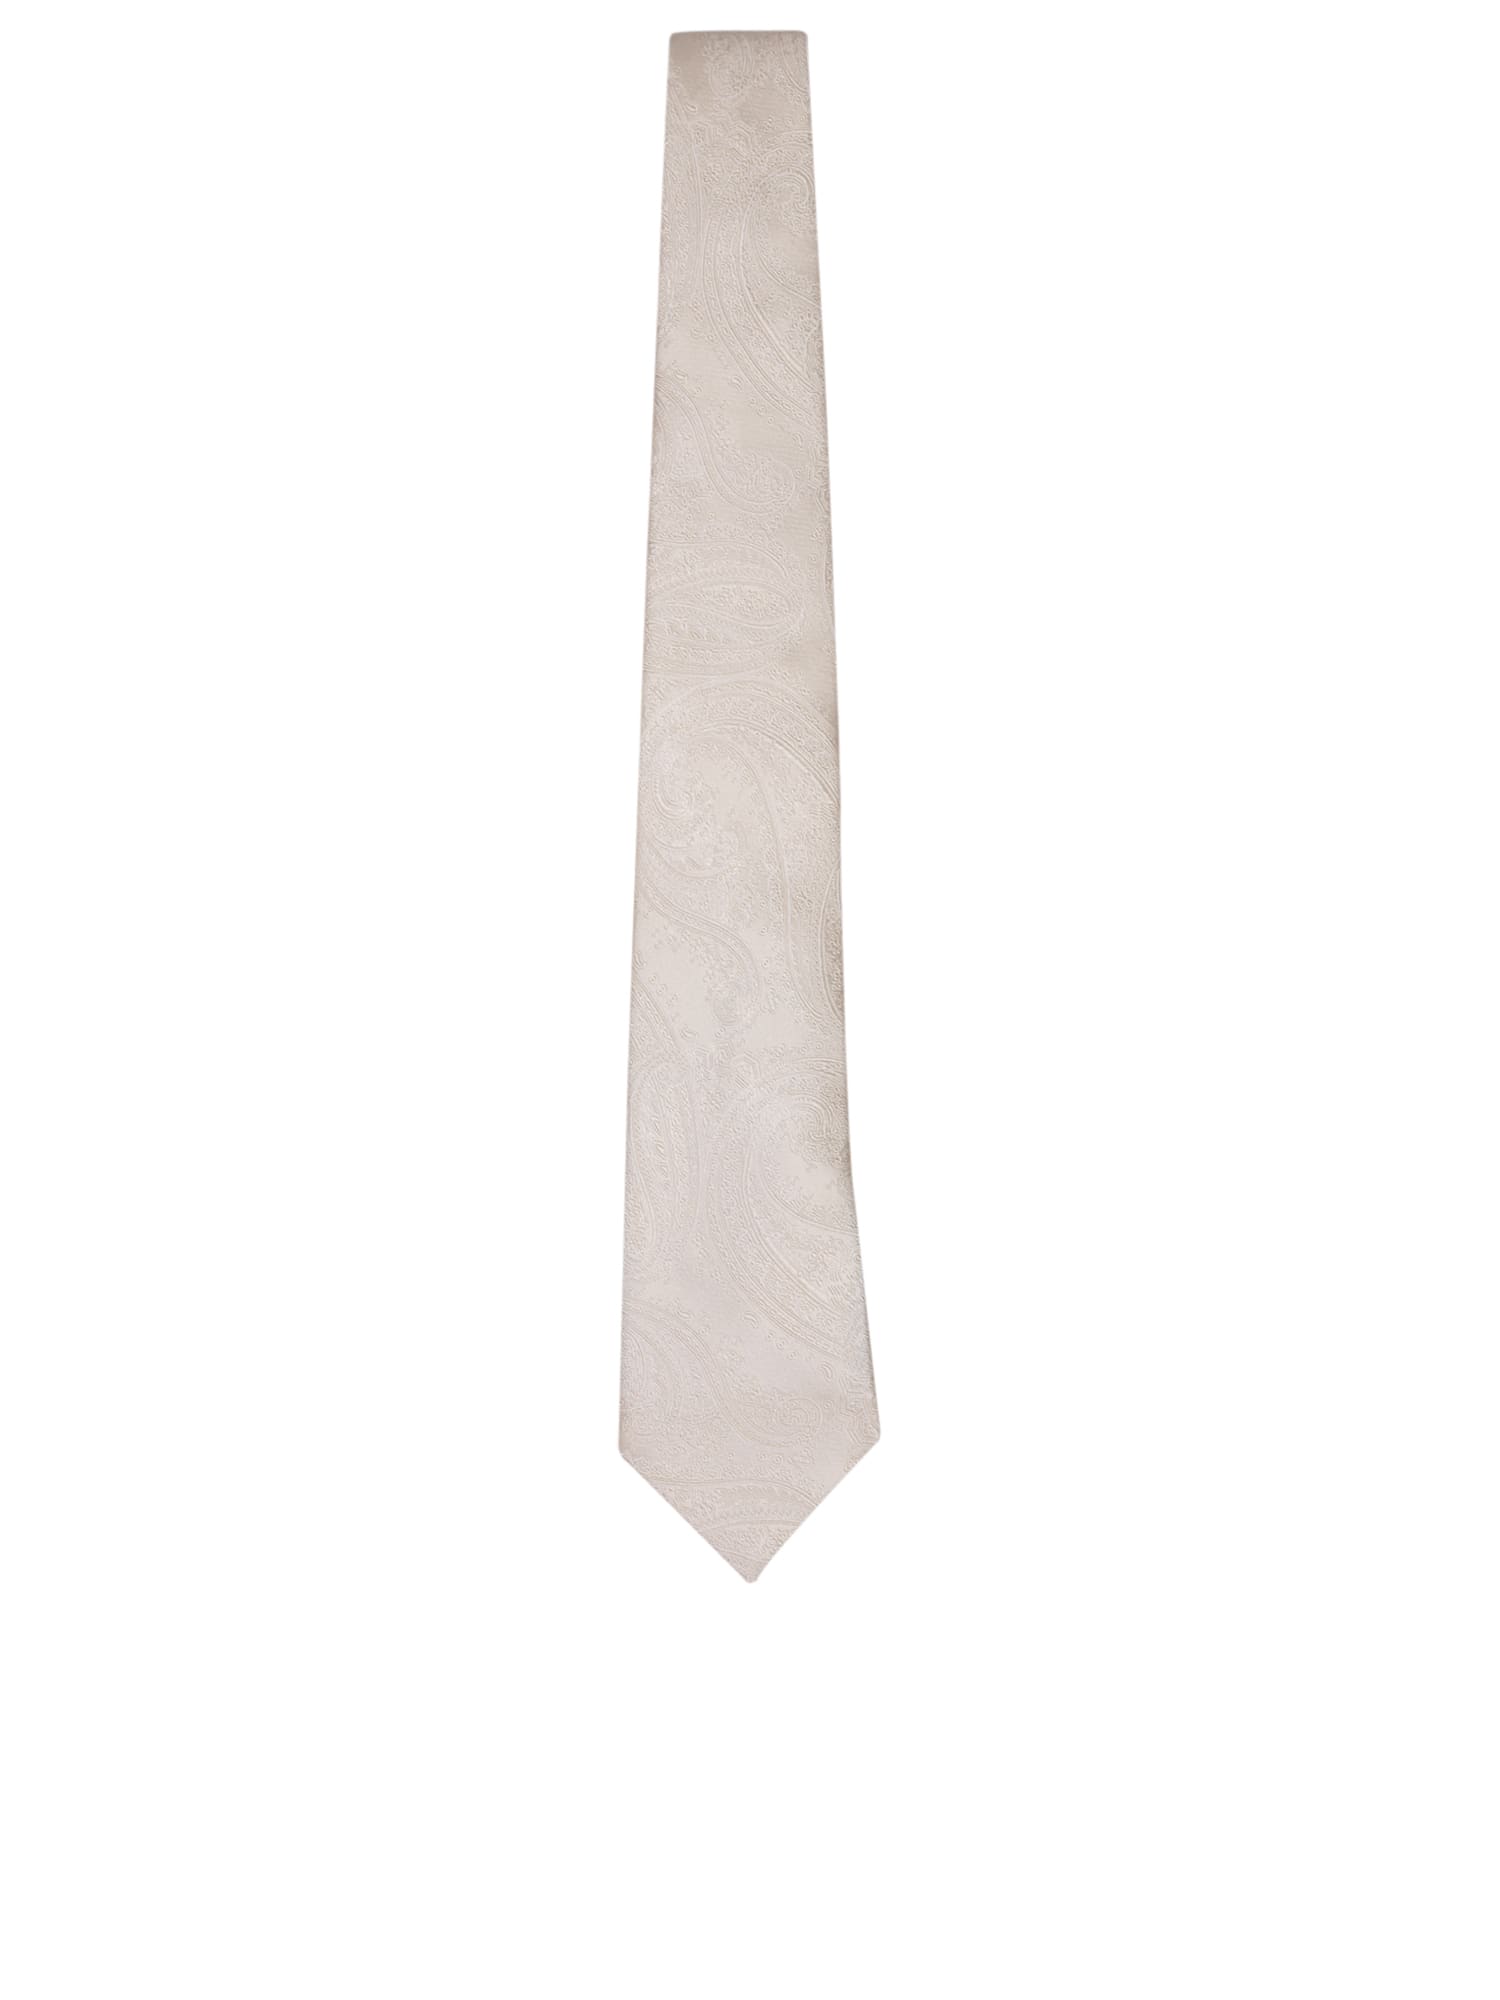 Paisley Motif White Tie